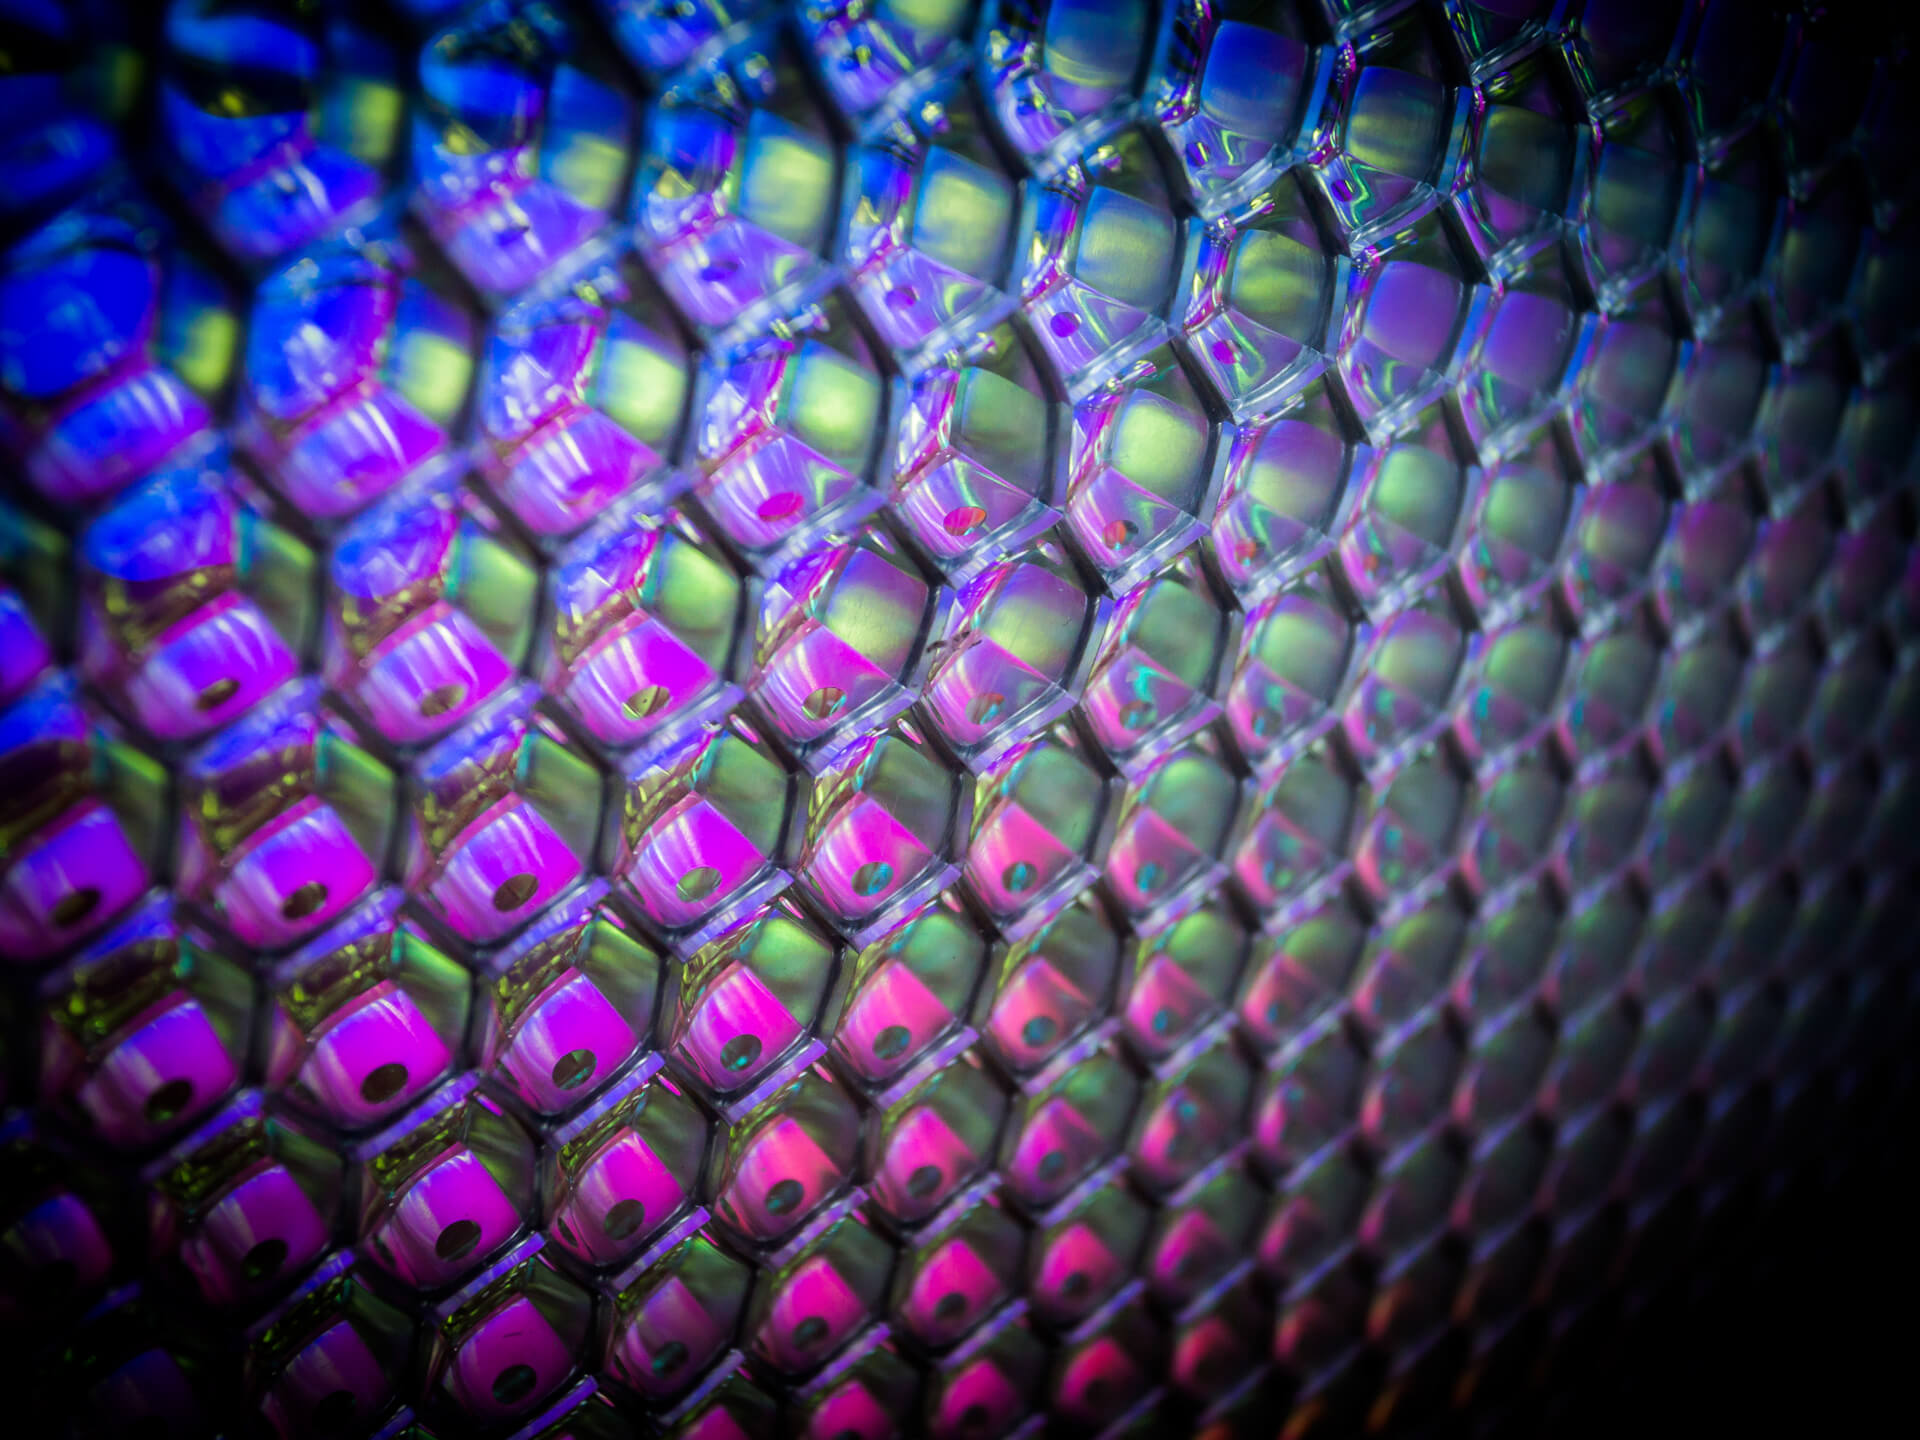 Polycarbonate honeycomb composite panels - colour honeycomb cells